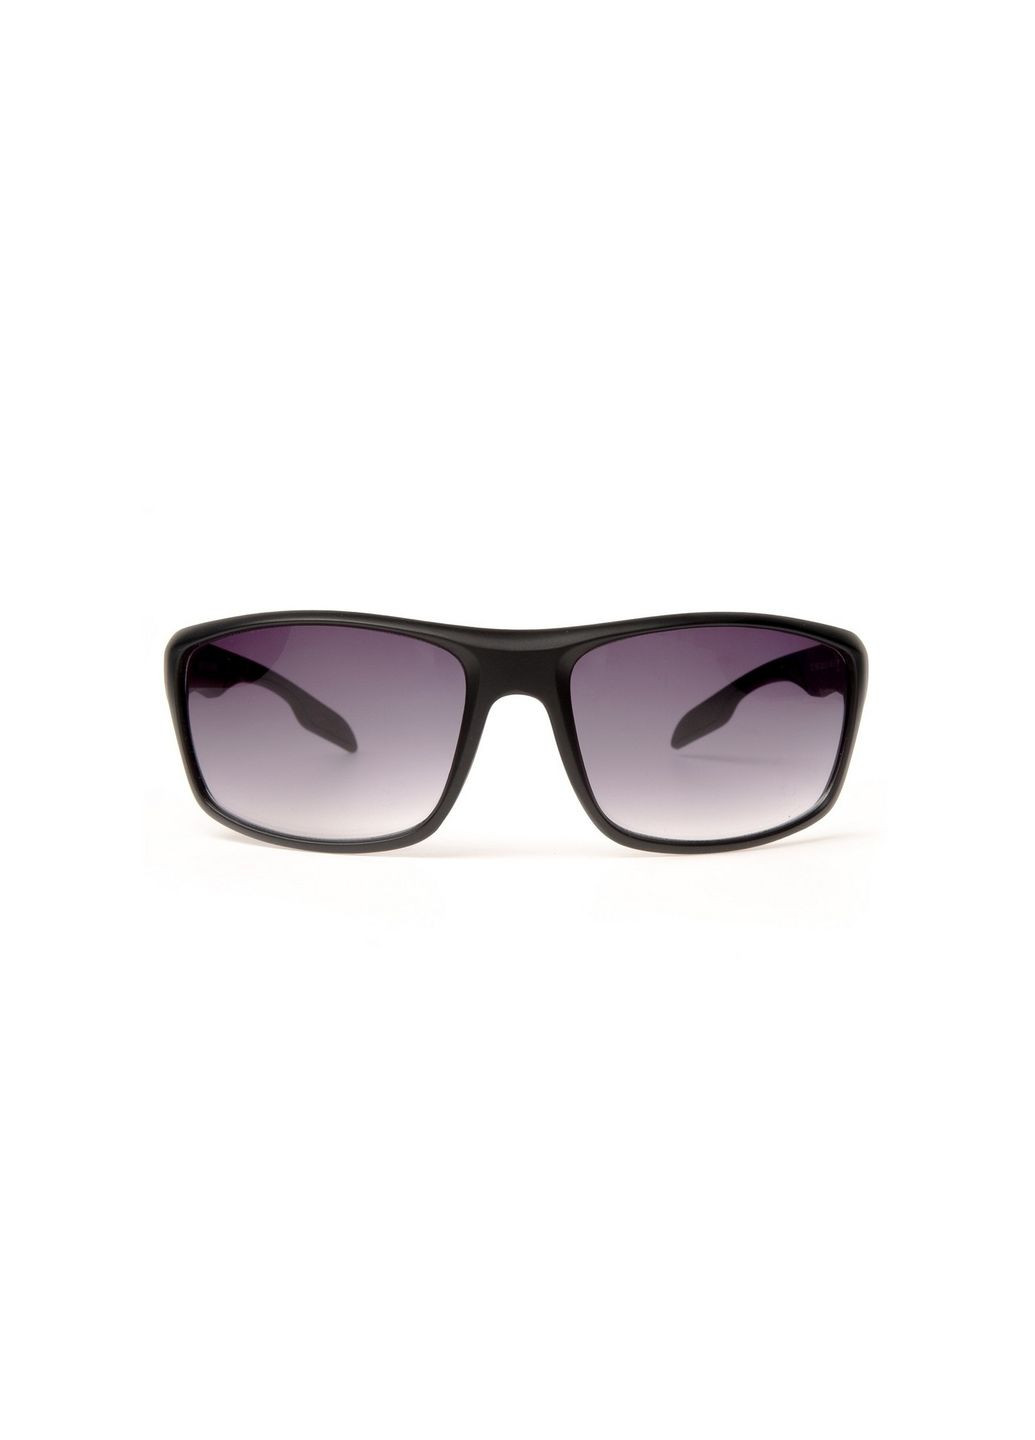 Сонцезахисні окуляри Спорт чоловічі 860-460 LuckyLOOK 860-460m (289358972)